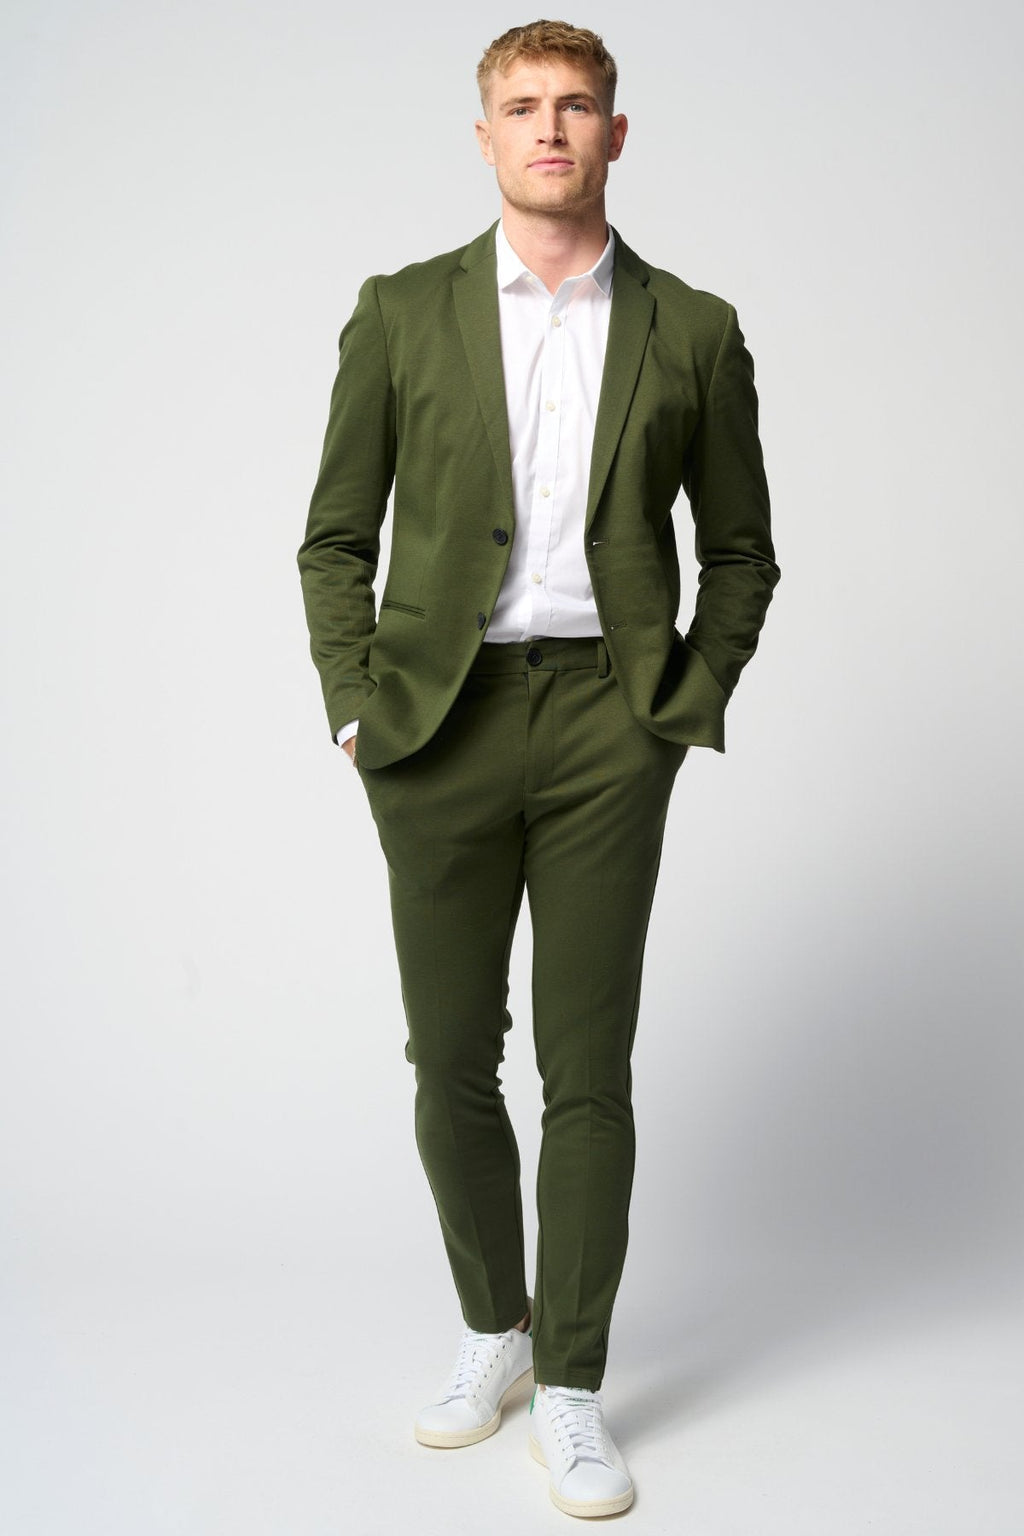 Original Performance Suit™️ (墨绿色) + 衬衫和领带 - 套装优惠 (V.I.P)